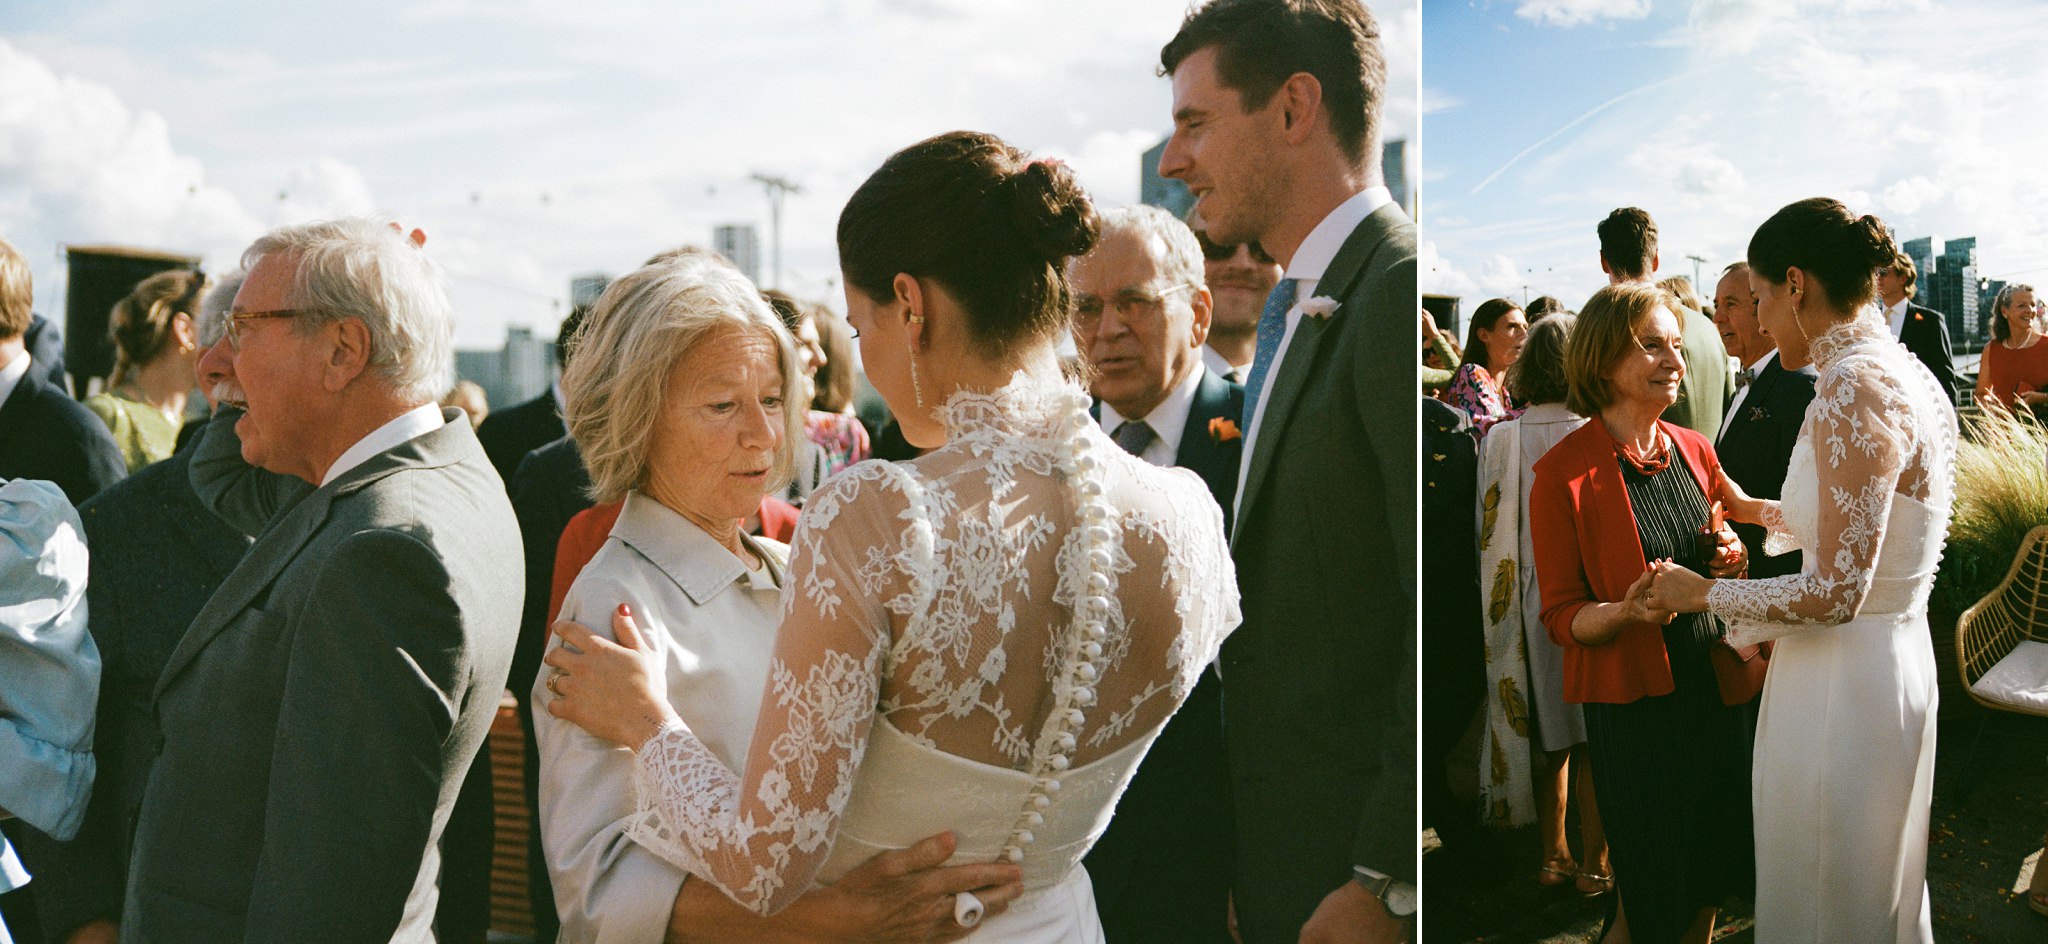 Trinity Buoy Wharf Wedding - Wedding Film Photography